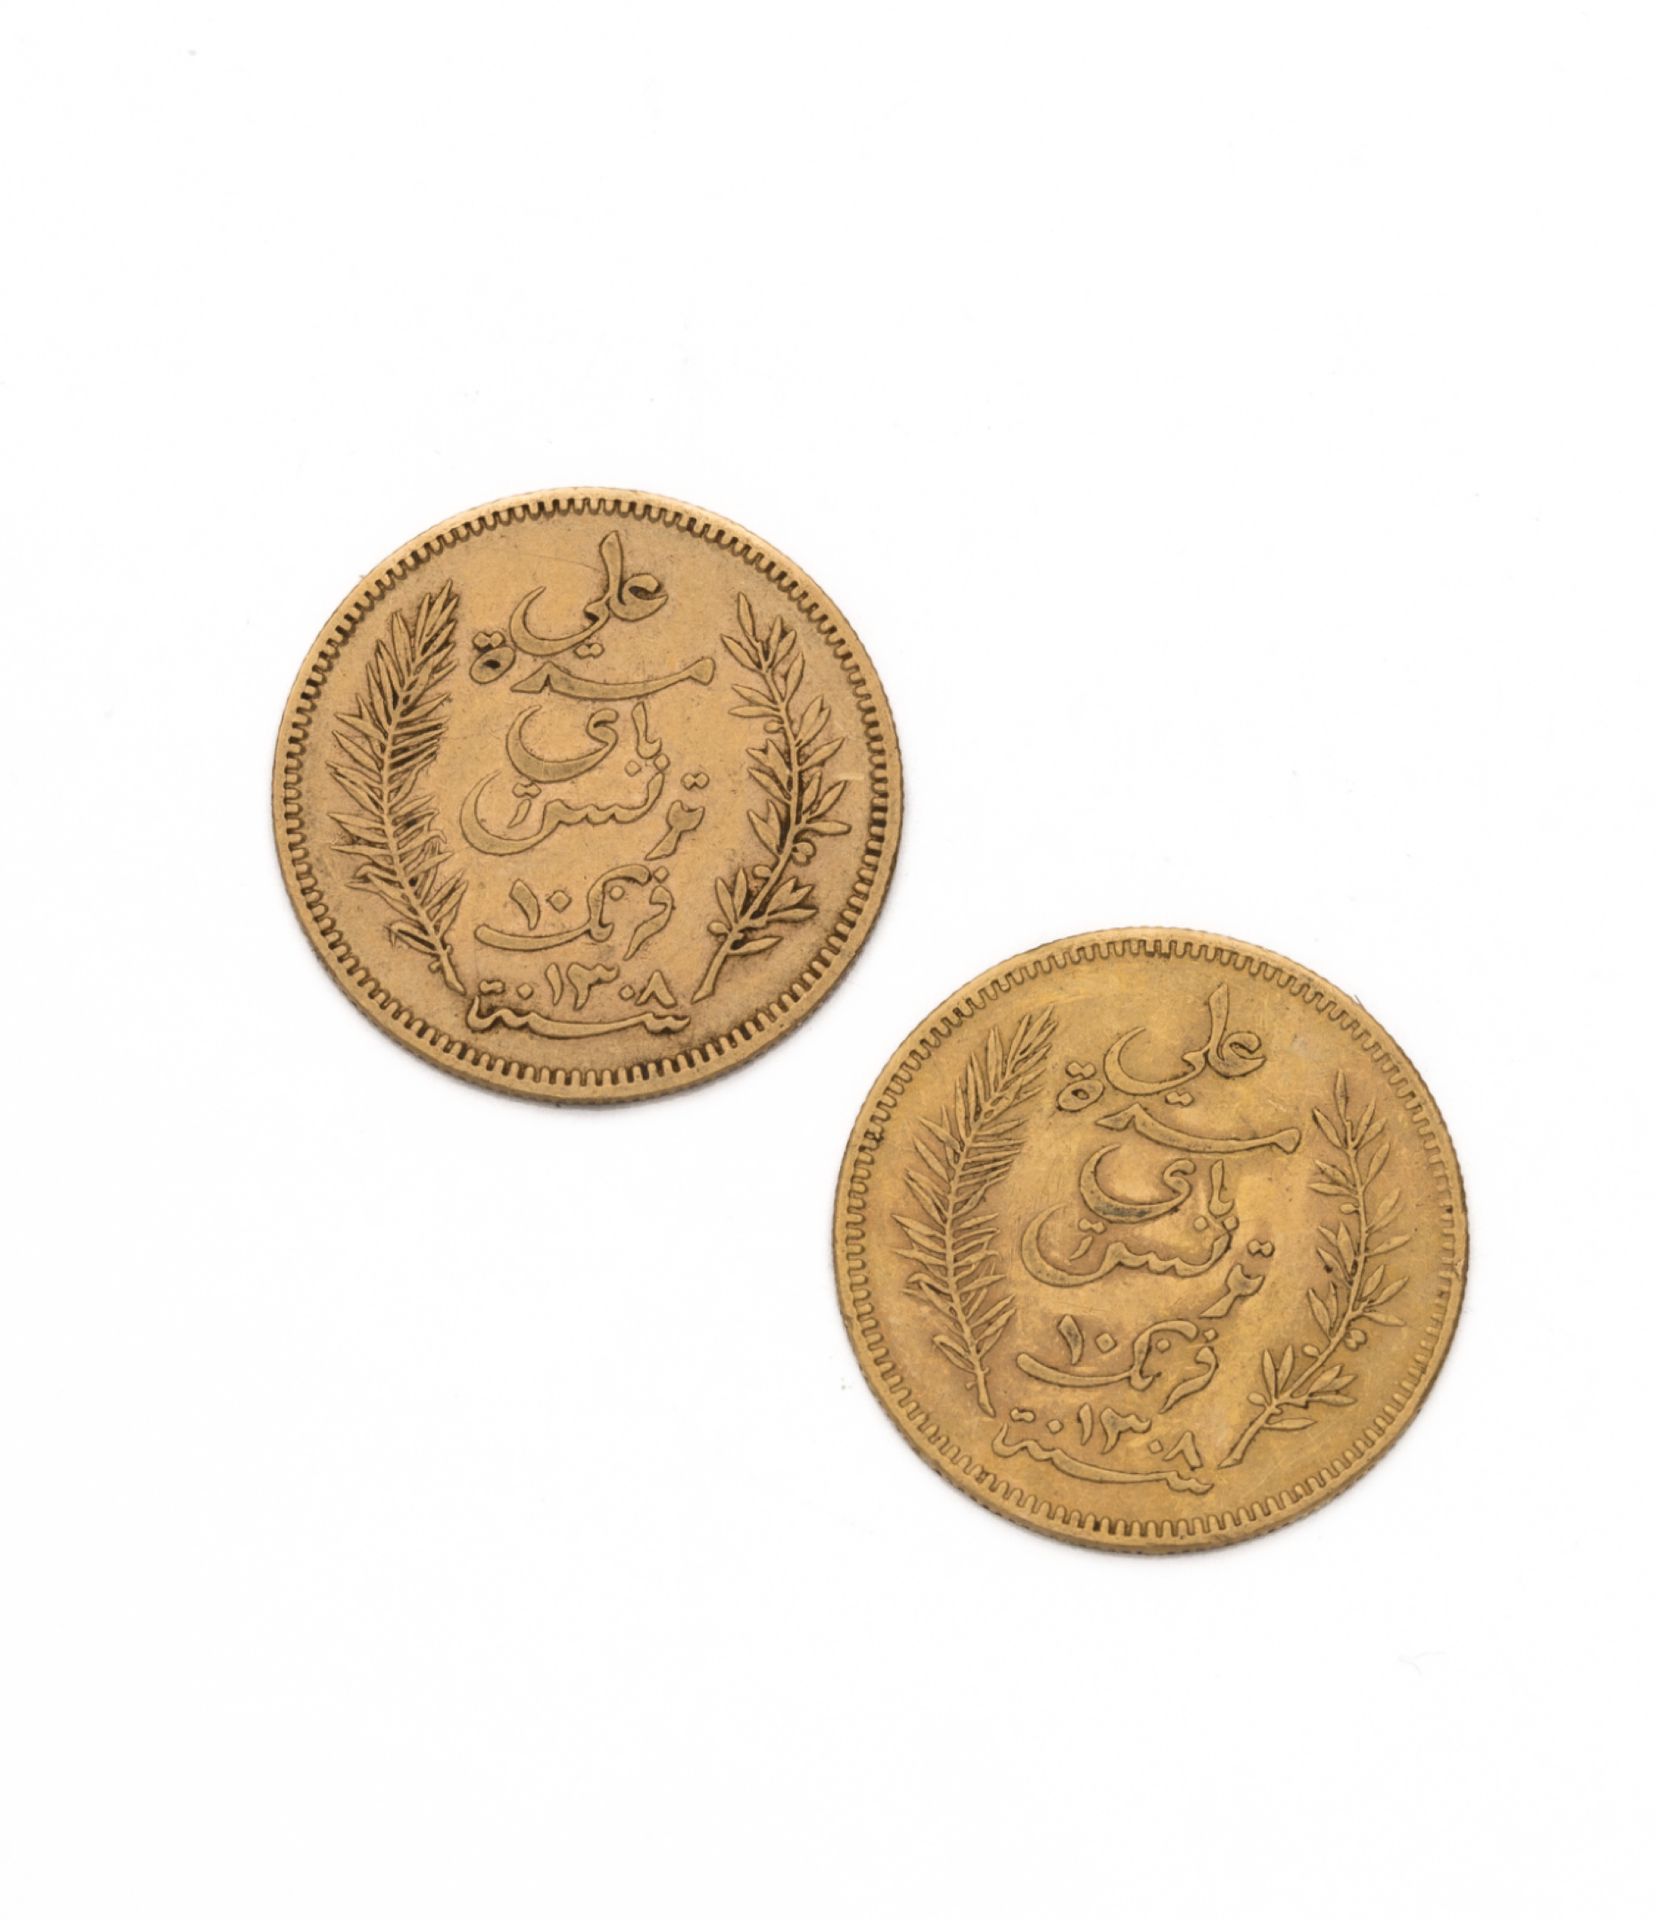 Null 突尼斯 - 法国保护国
10法郎金币。2件。1891 A
重量：6,38克